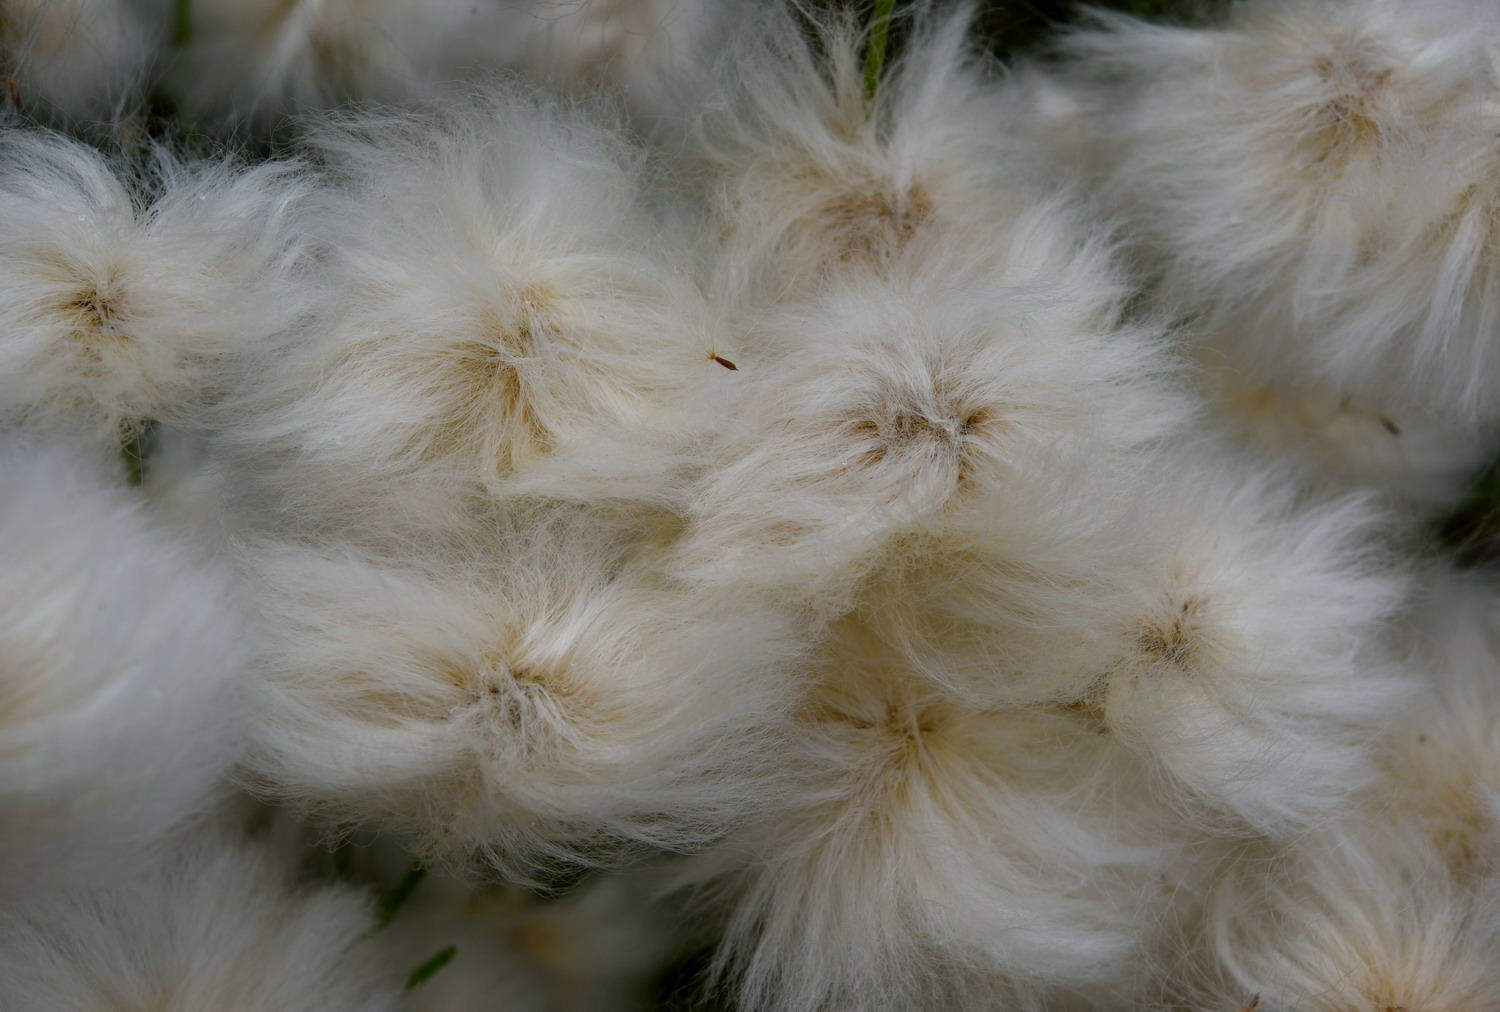 DSC_5460_1A1 - Cotton Grass